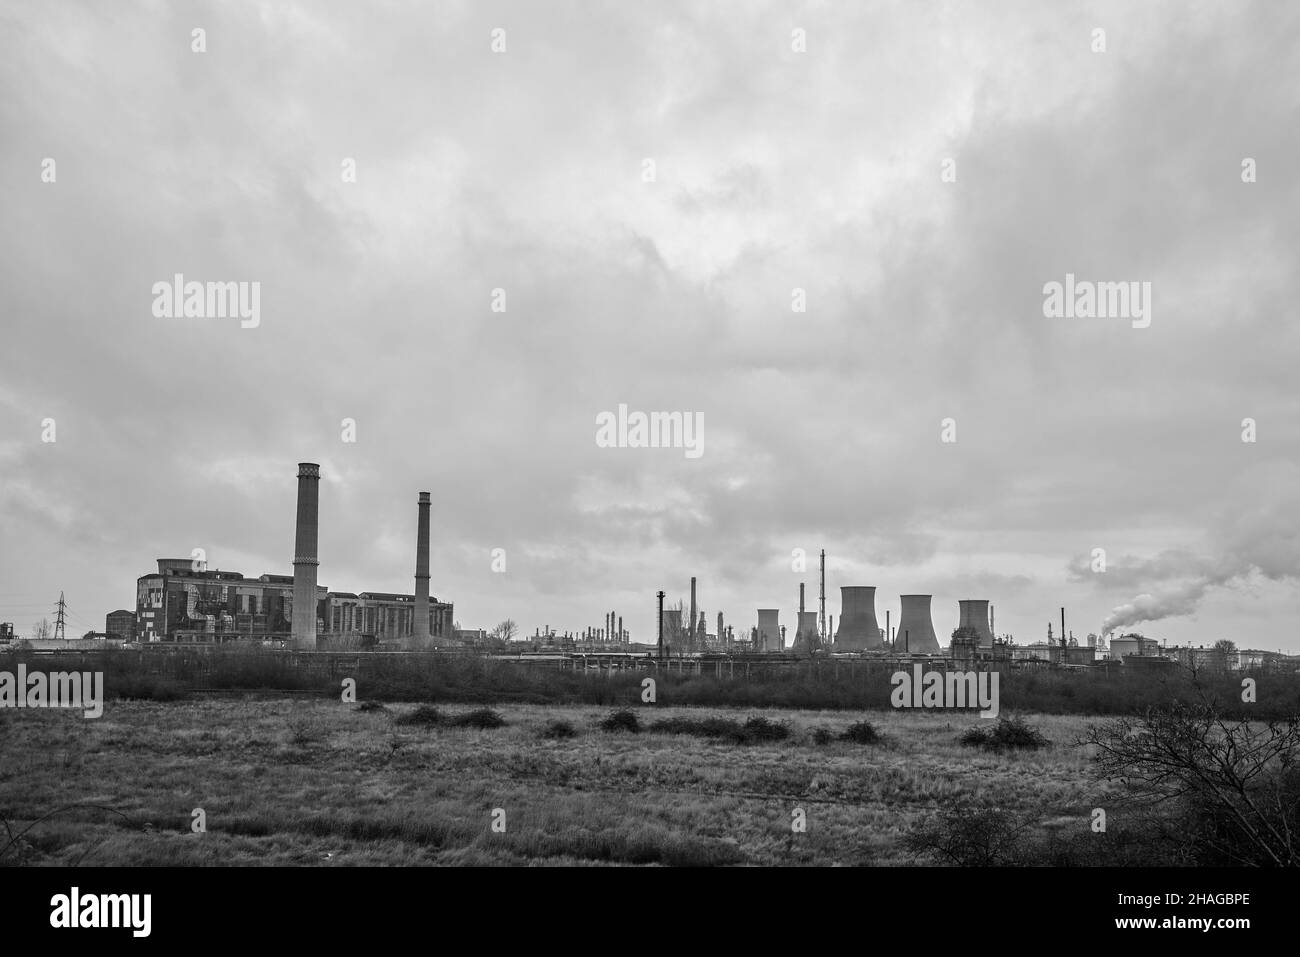 paysage industriel avec une raffinerie, industrie polluante.Ruines industrielles. Banque D'Images